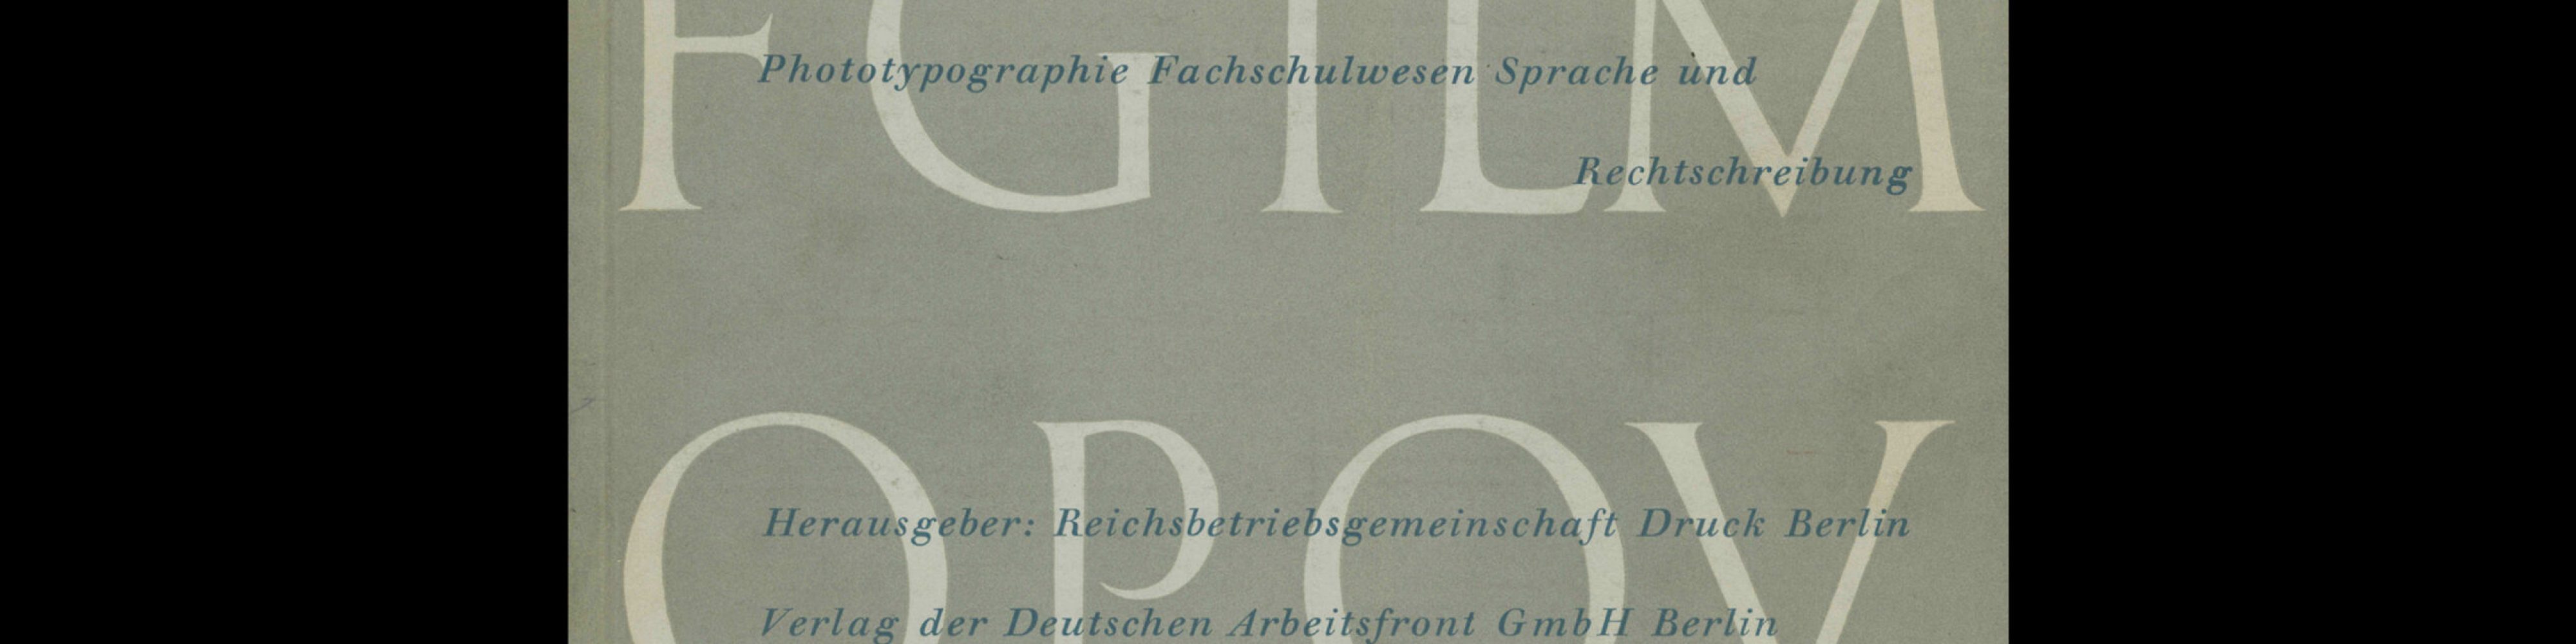 Graphische Nachrichten, Vol 15, December 1936